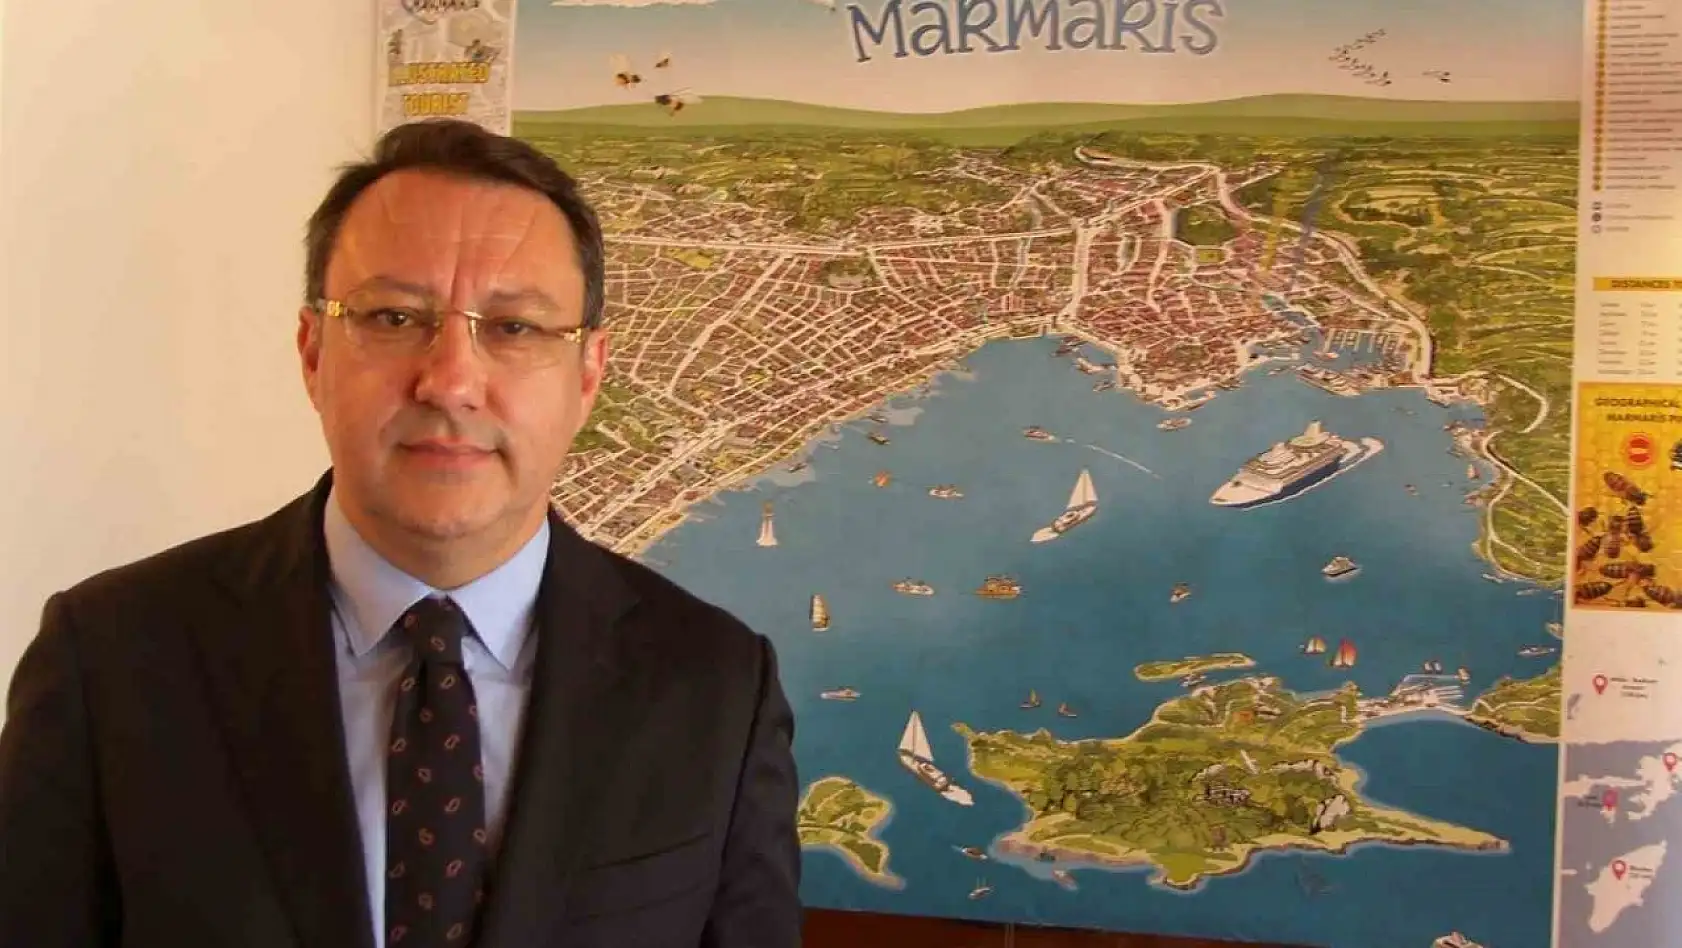 Marmaris Ticaret Odası, Marmaris'in turizm haritasını hazırladı